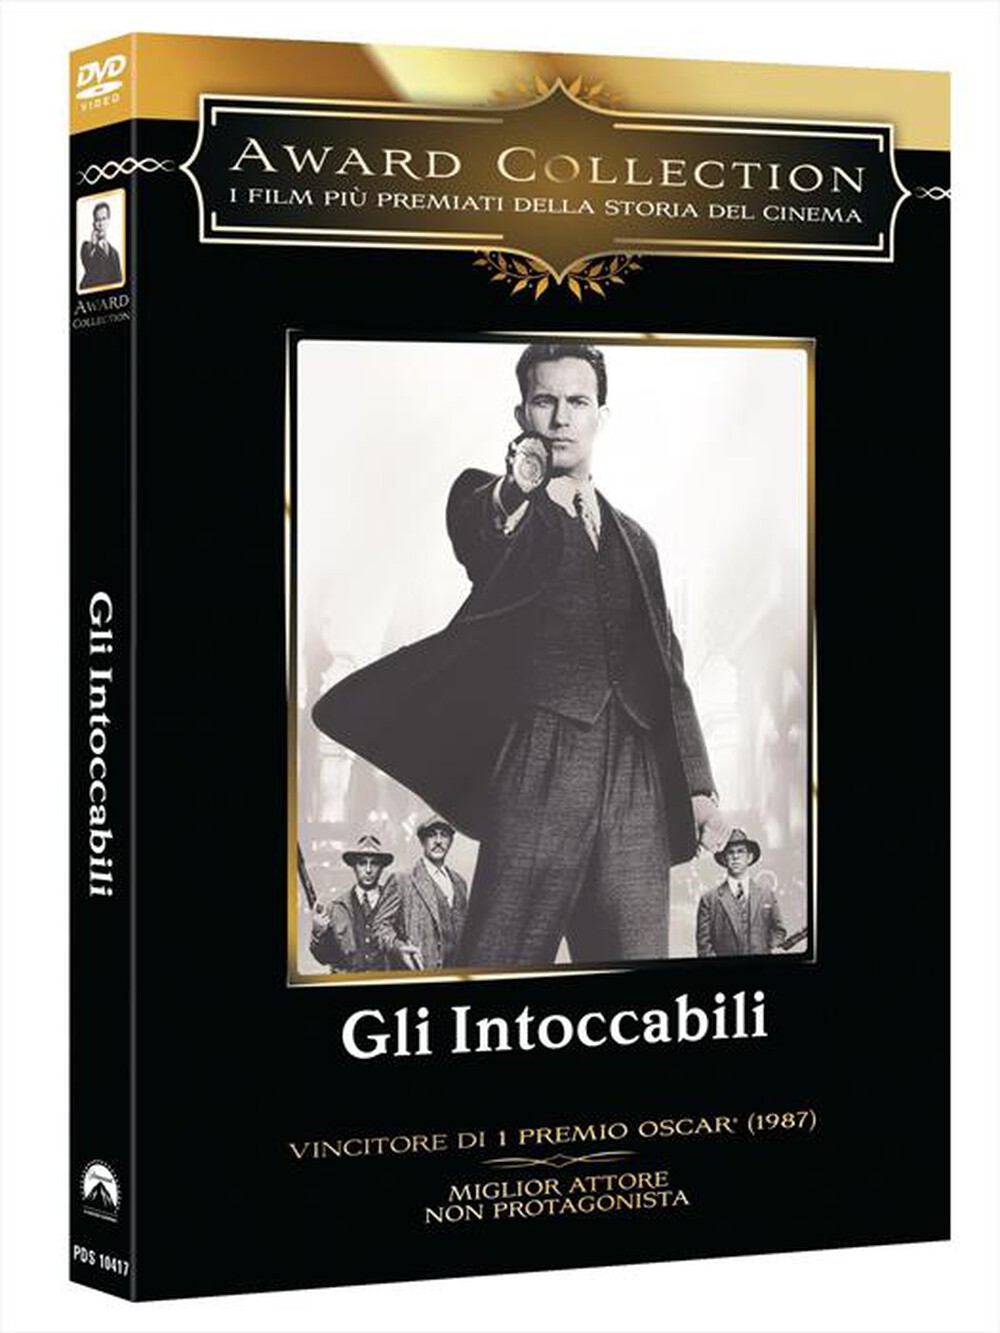 "Paramount Pictures - Intoccabili (Gli) (Edizione Speciale)"